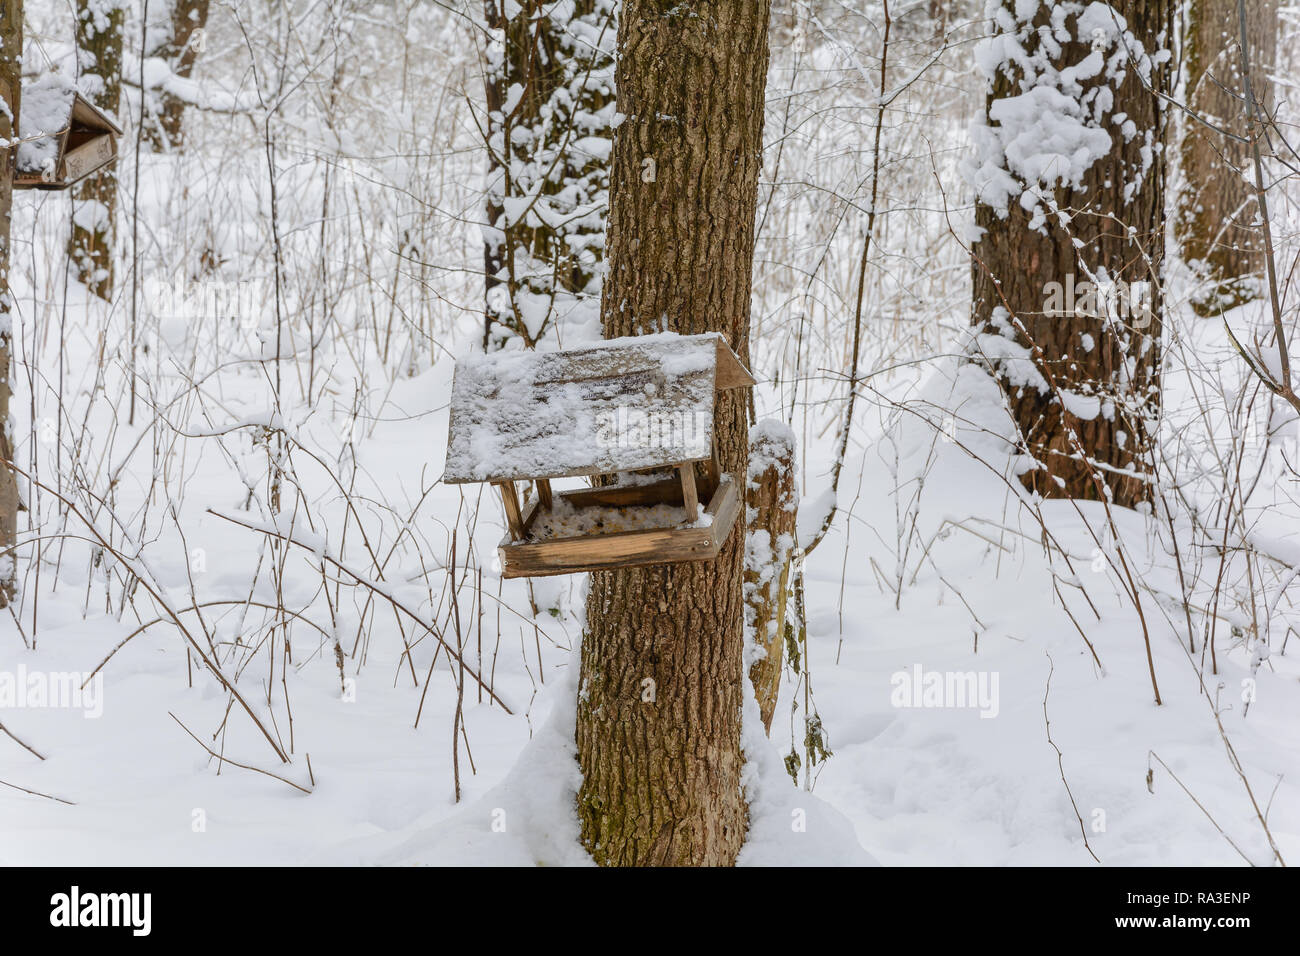 Bird feeder in winter forest Stock Photo